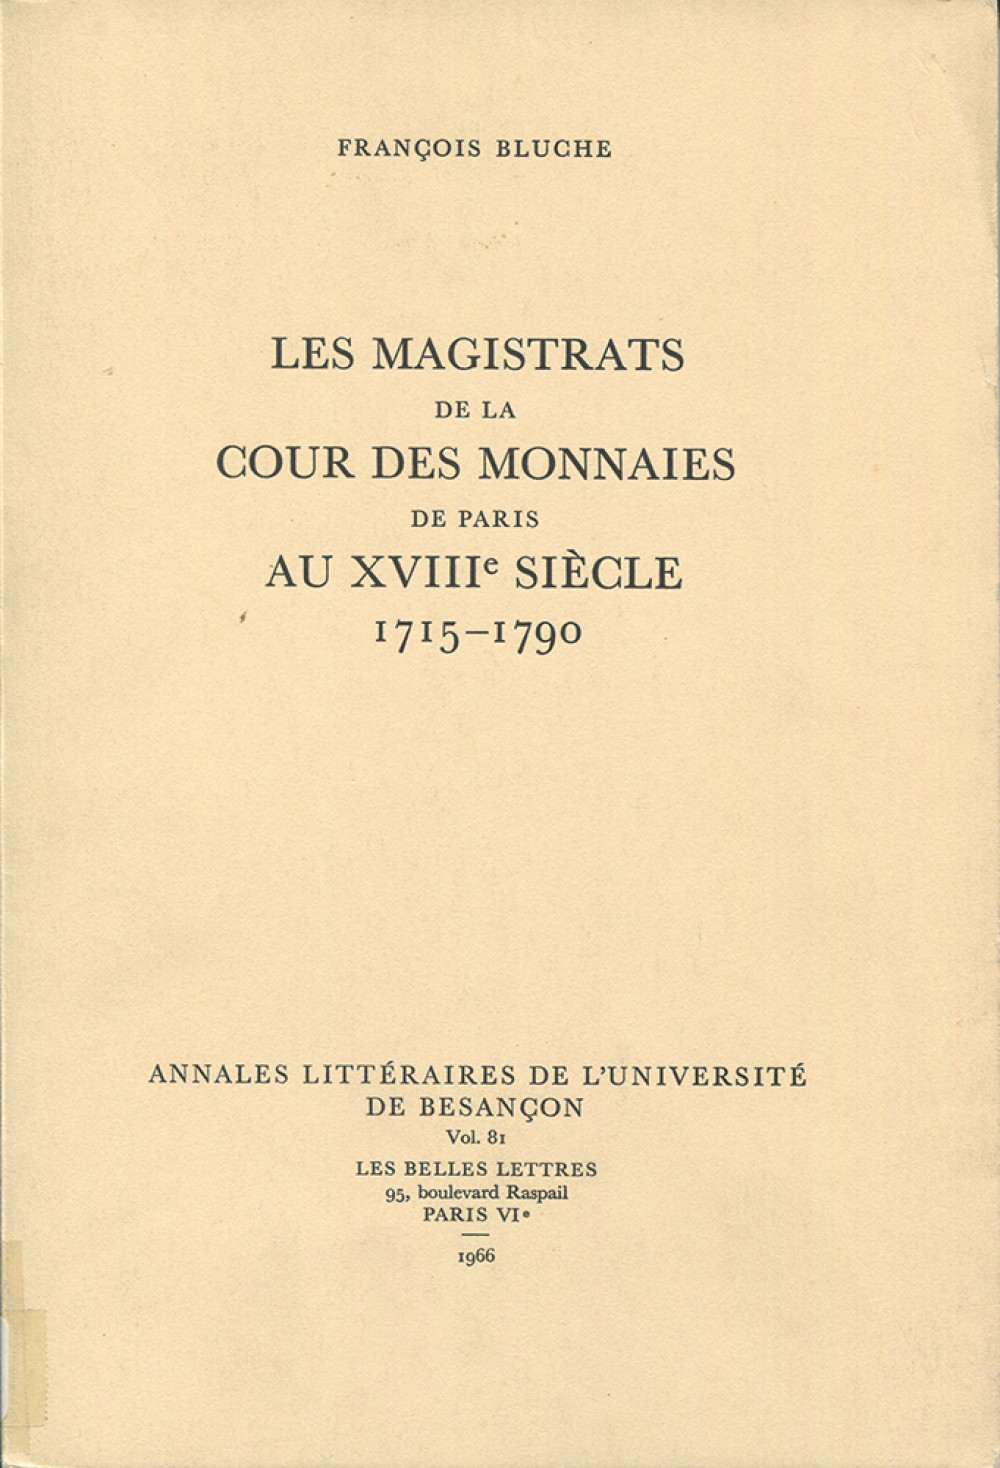 Les magistrats de la Cour des Monnaies de Paris au XVIIIe siècle (1715-1790)